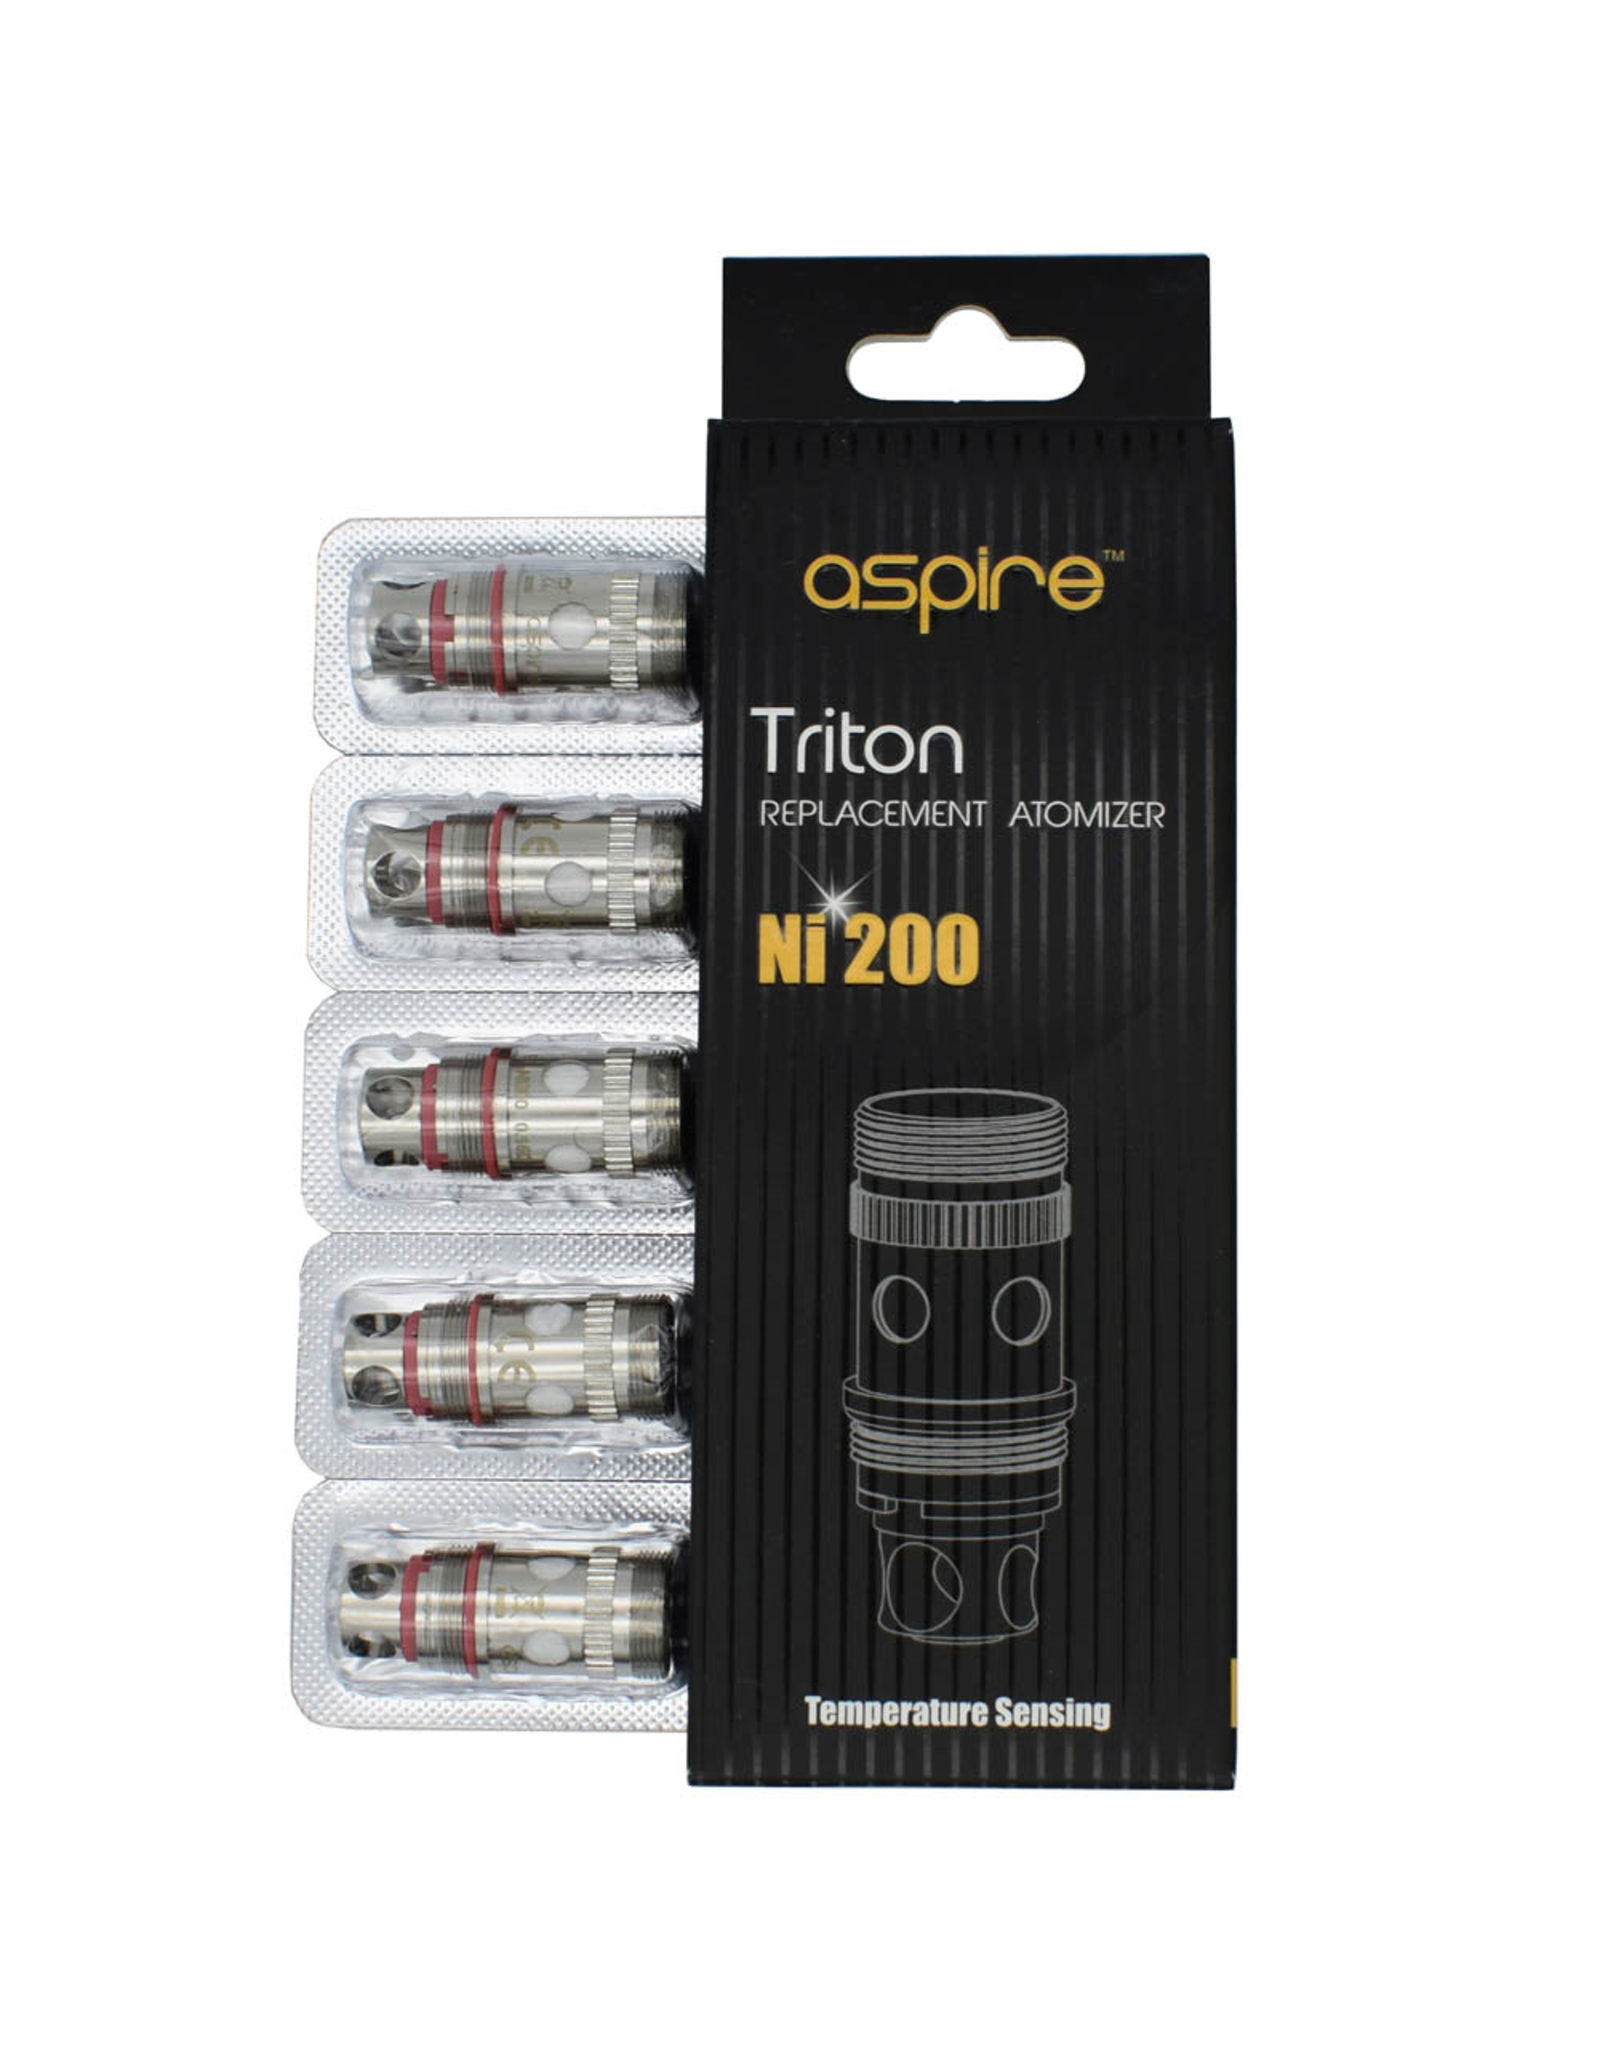 Aspire Aspire Triton 0.15 Ω NI200 coil single